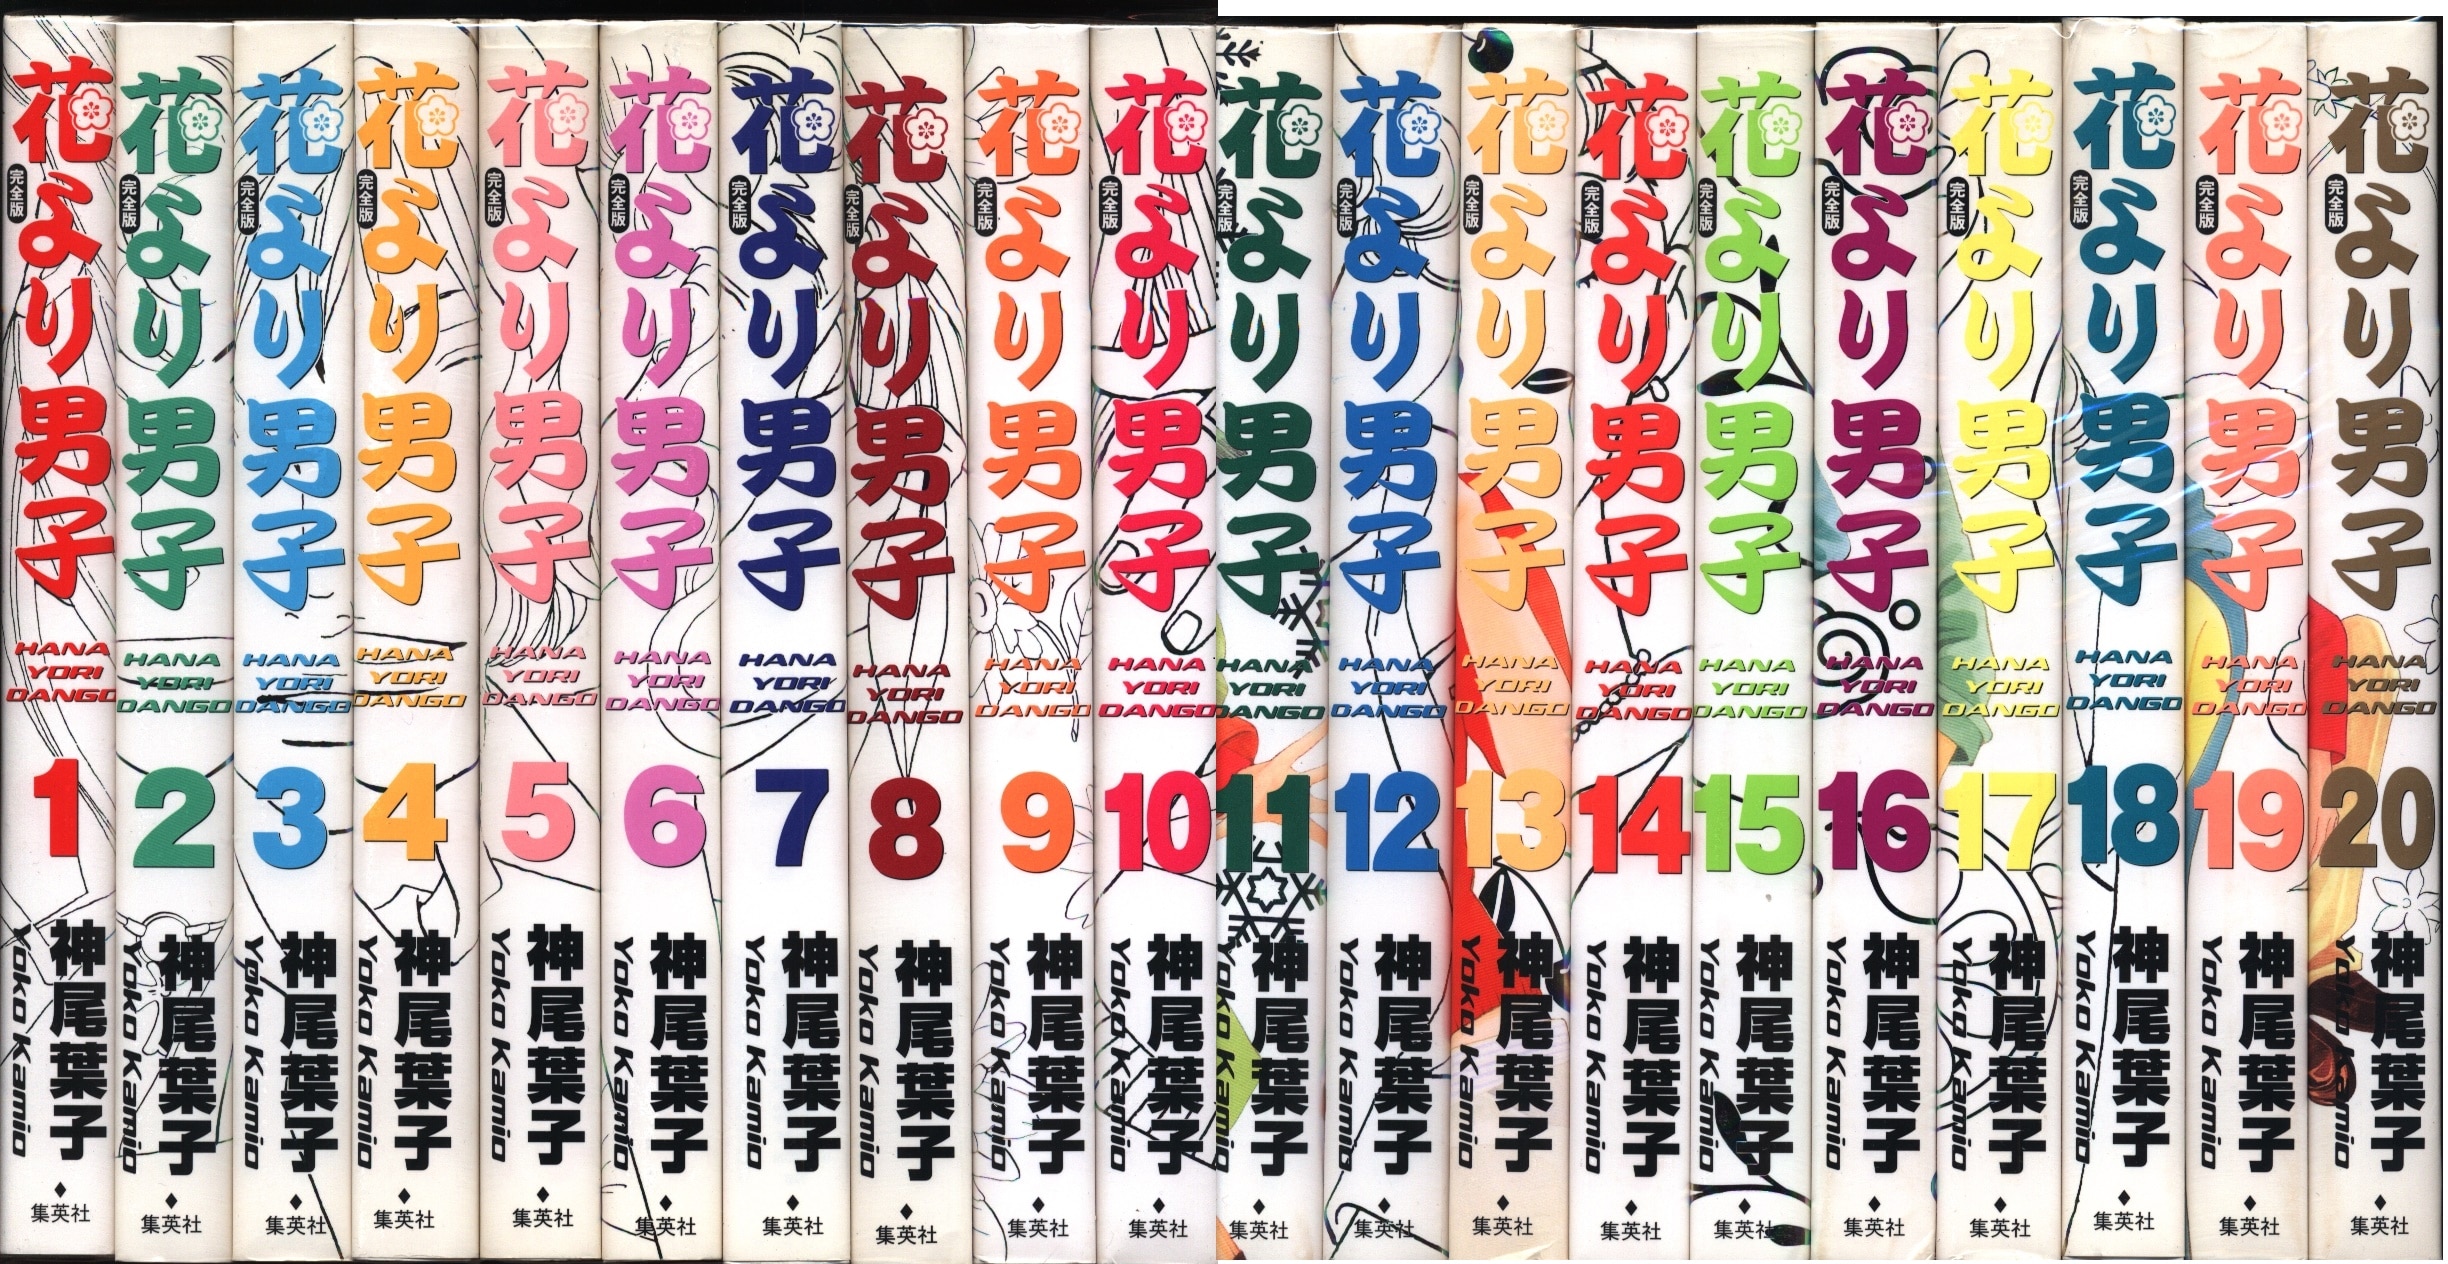 集英社 集英社ガールズコミックス 神尾葉子 花より男子 完全版 全巻 セット まんだらけ Mandarake